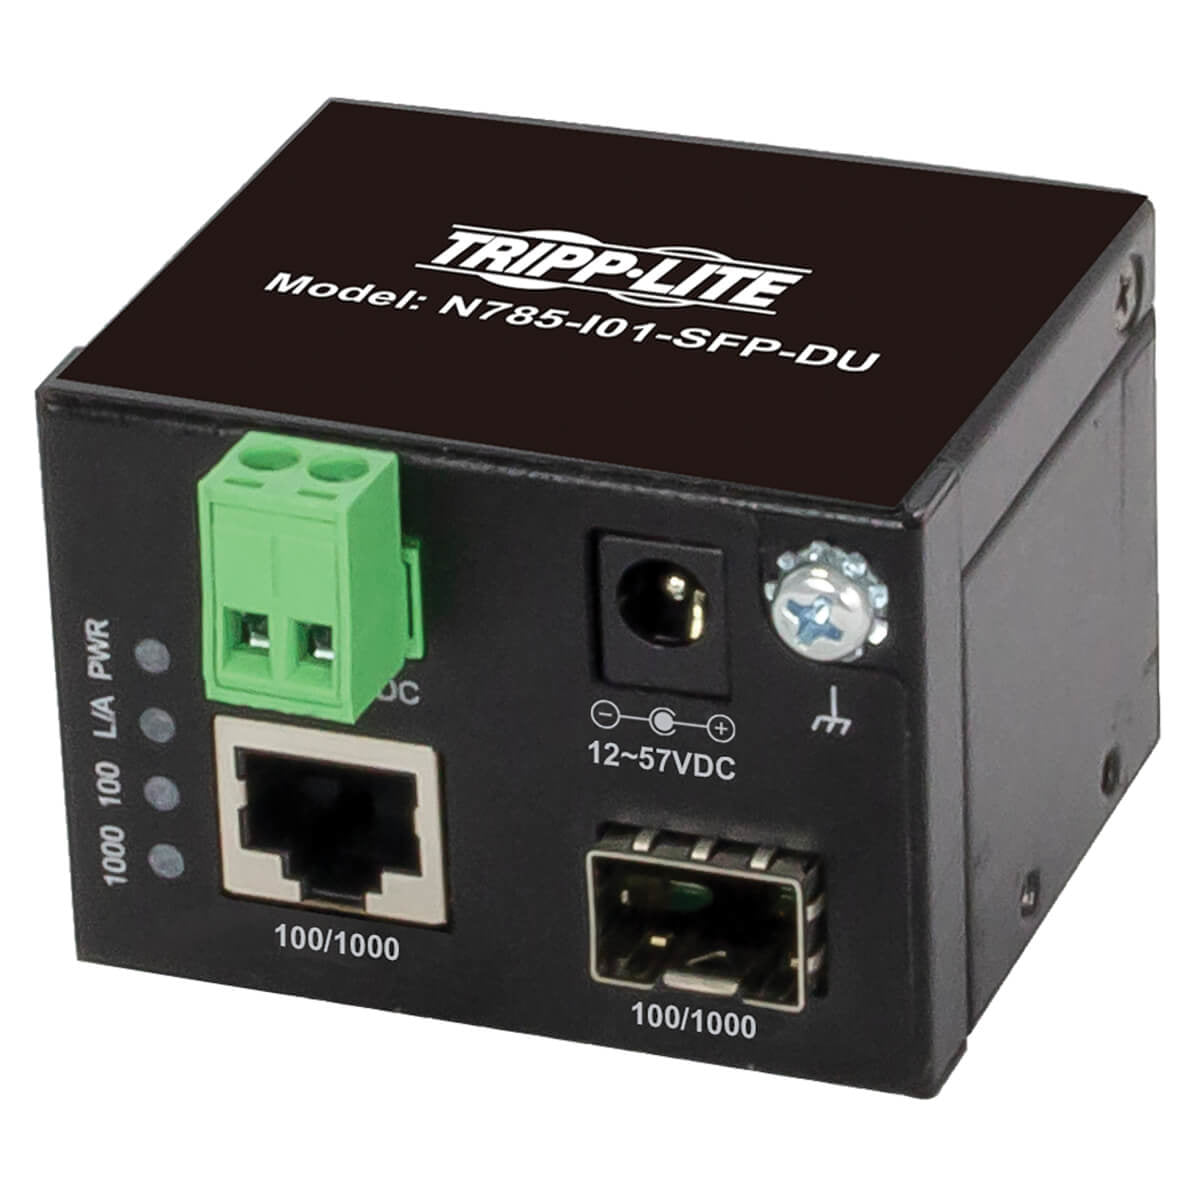 N785-I01-SFP-DU - Tripp Lite - network media converter 1000 Mbit/s Multi-mode, Single-mode Black